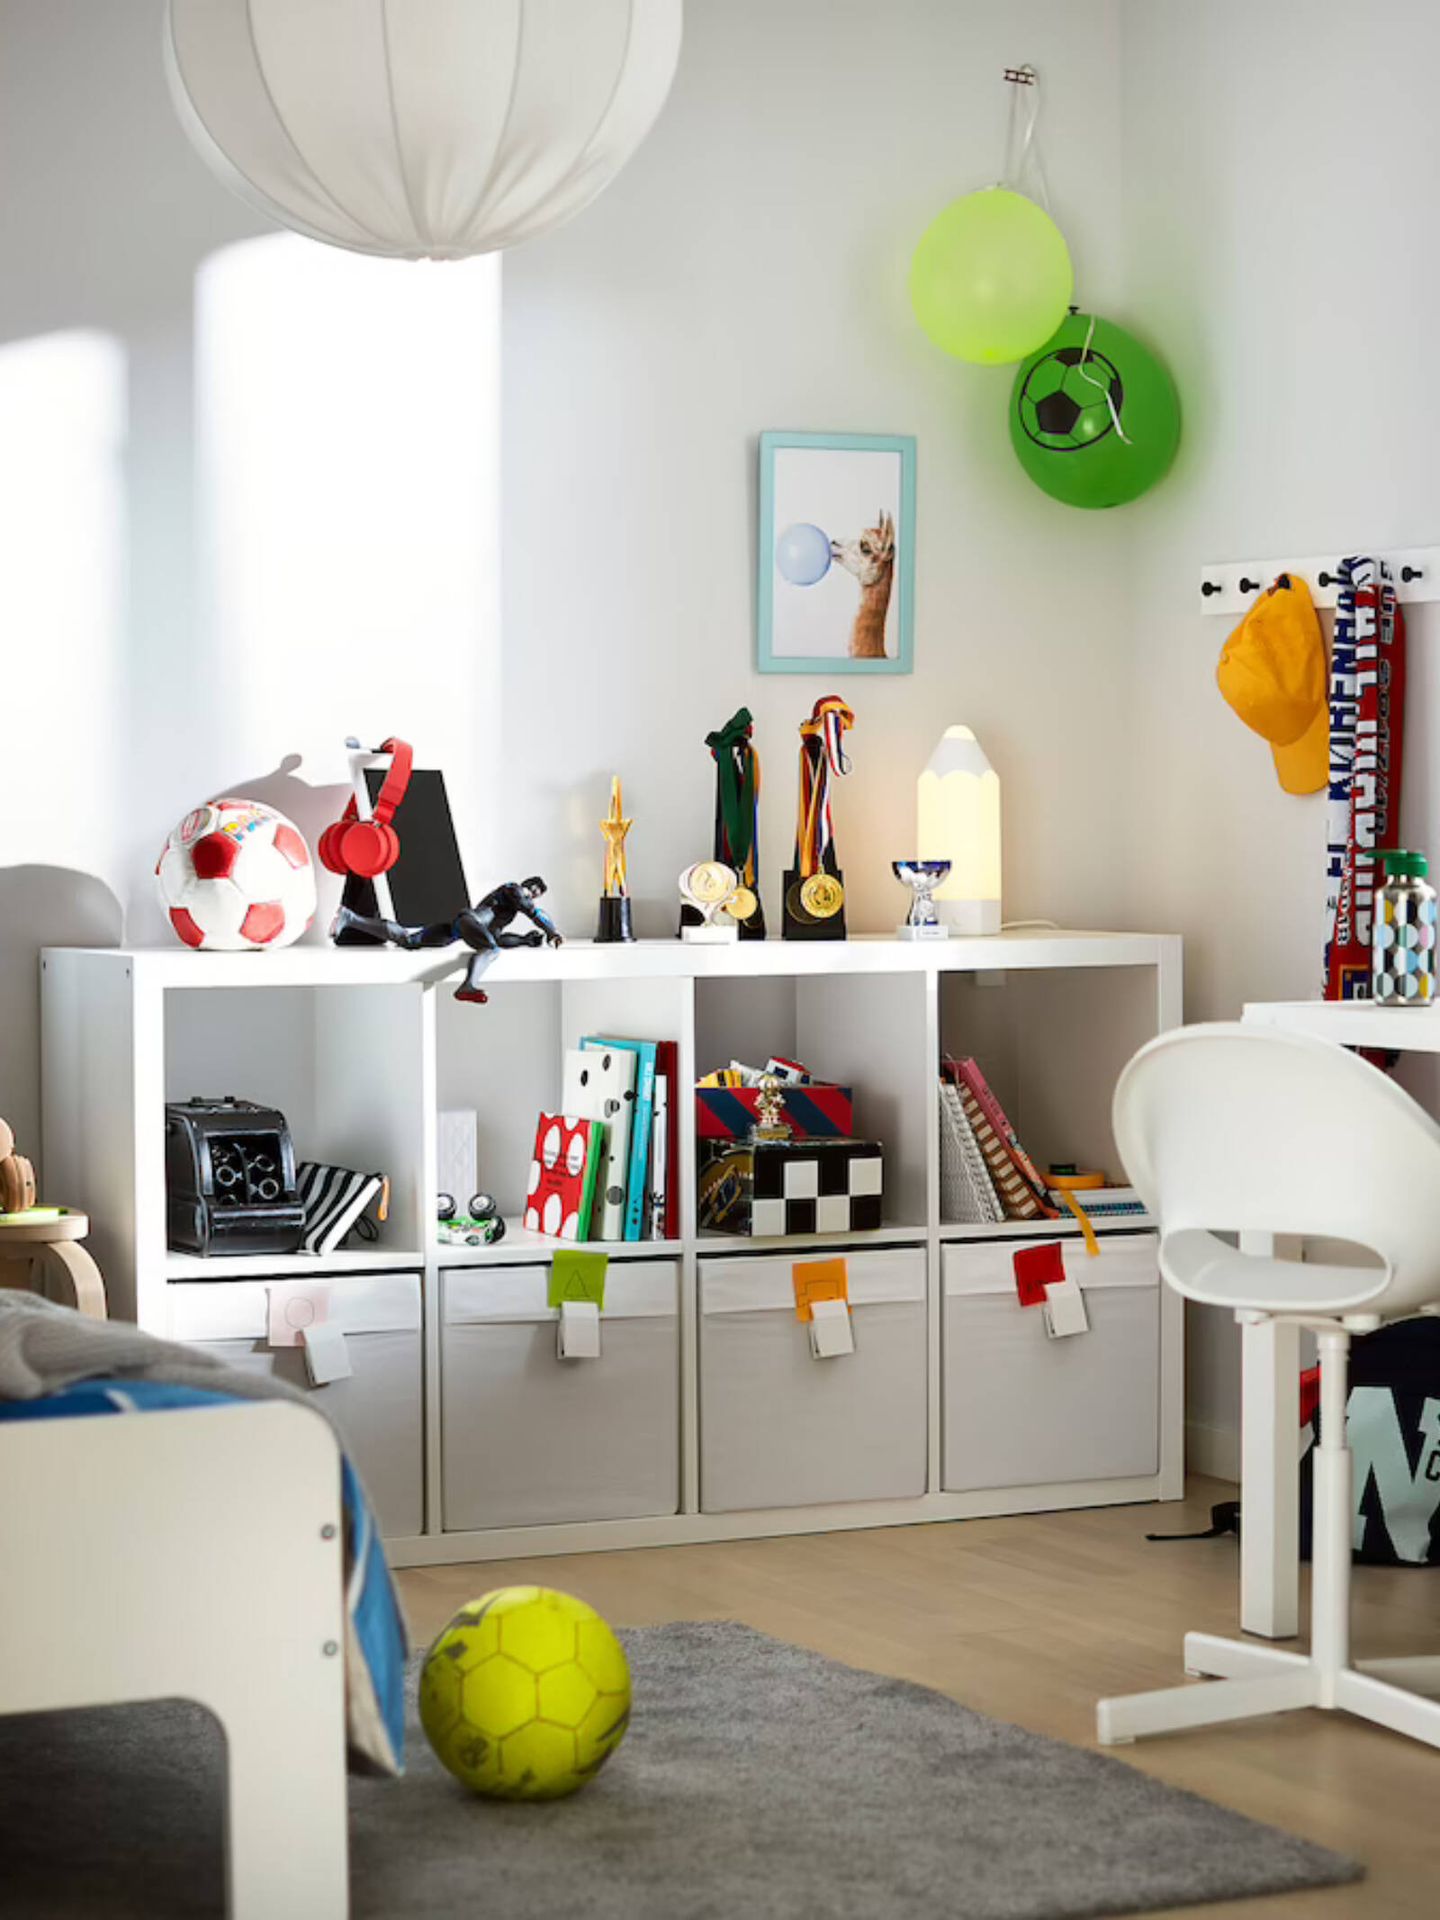 El mueble mas vendido por Ikea en Francia para una casa ordenada. (Cortesía/Ikea)